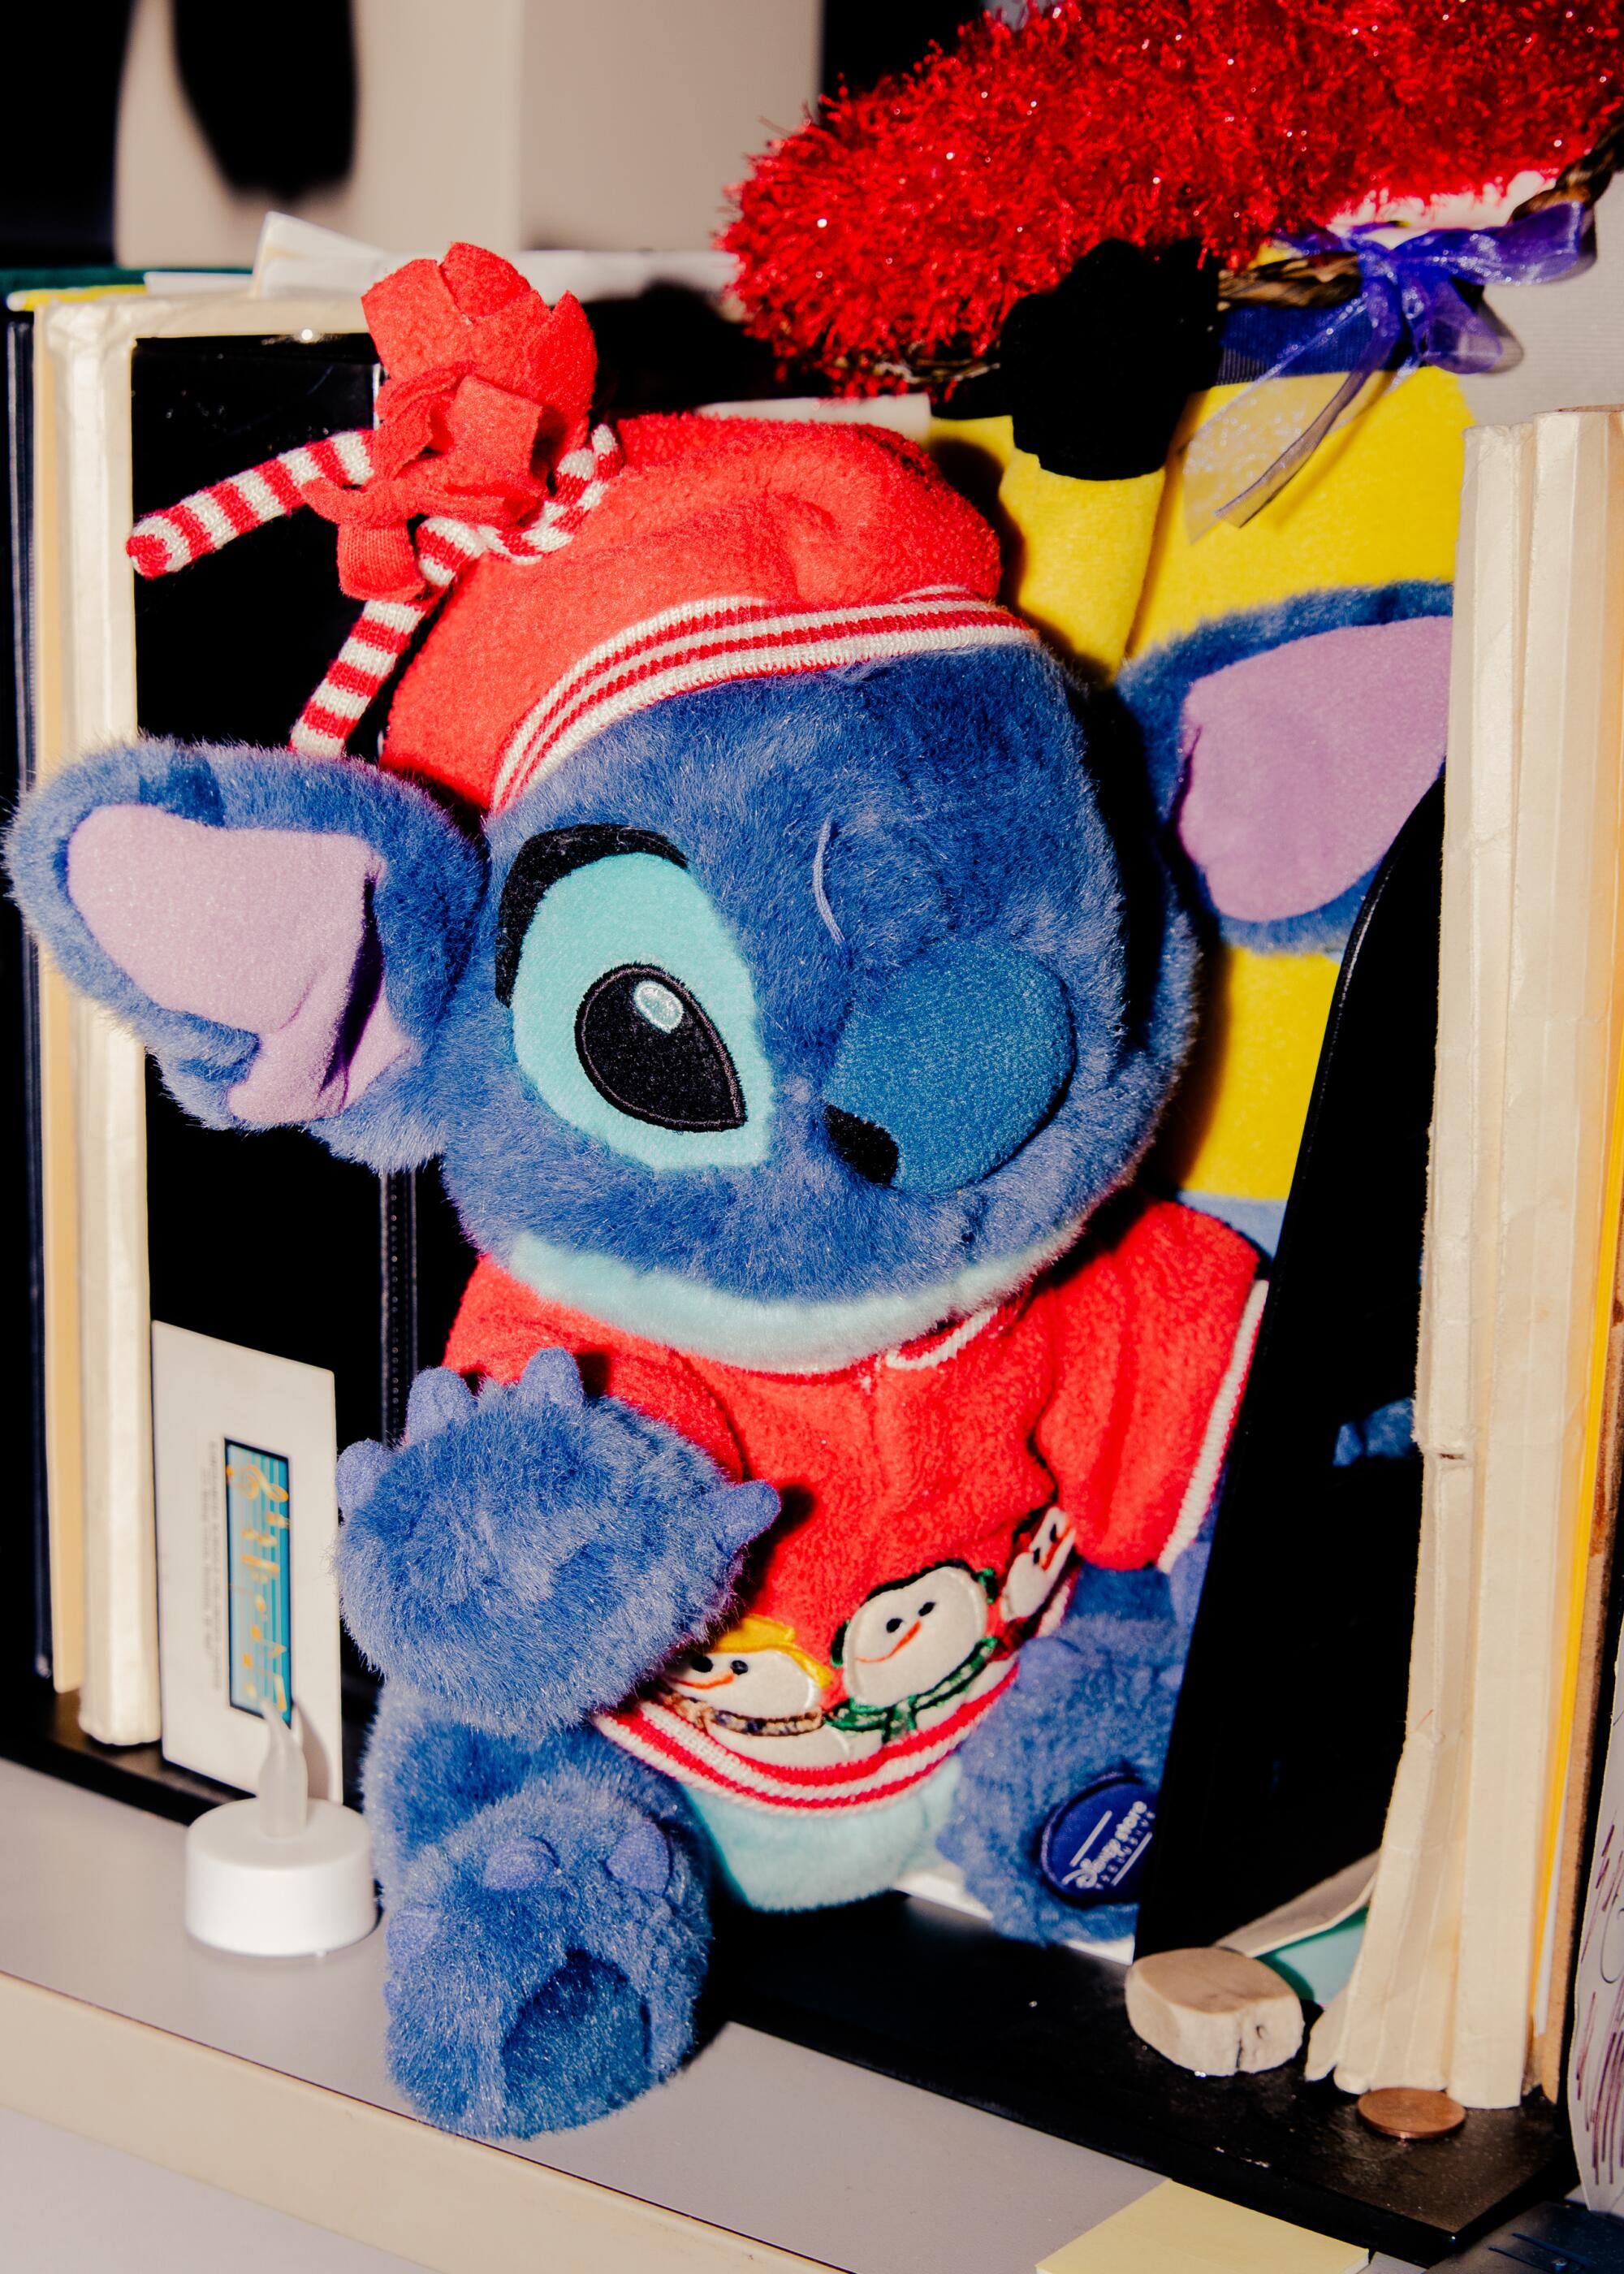 Disney: 10 Things That Don't Make Sense About Lilo & Stitch